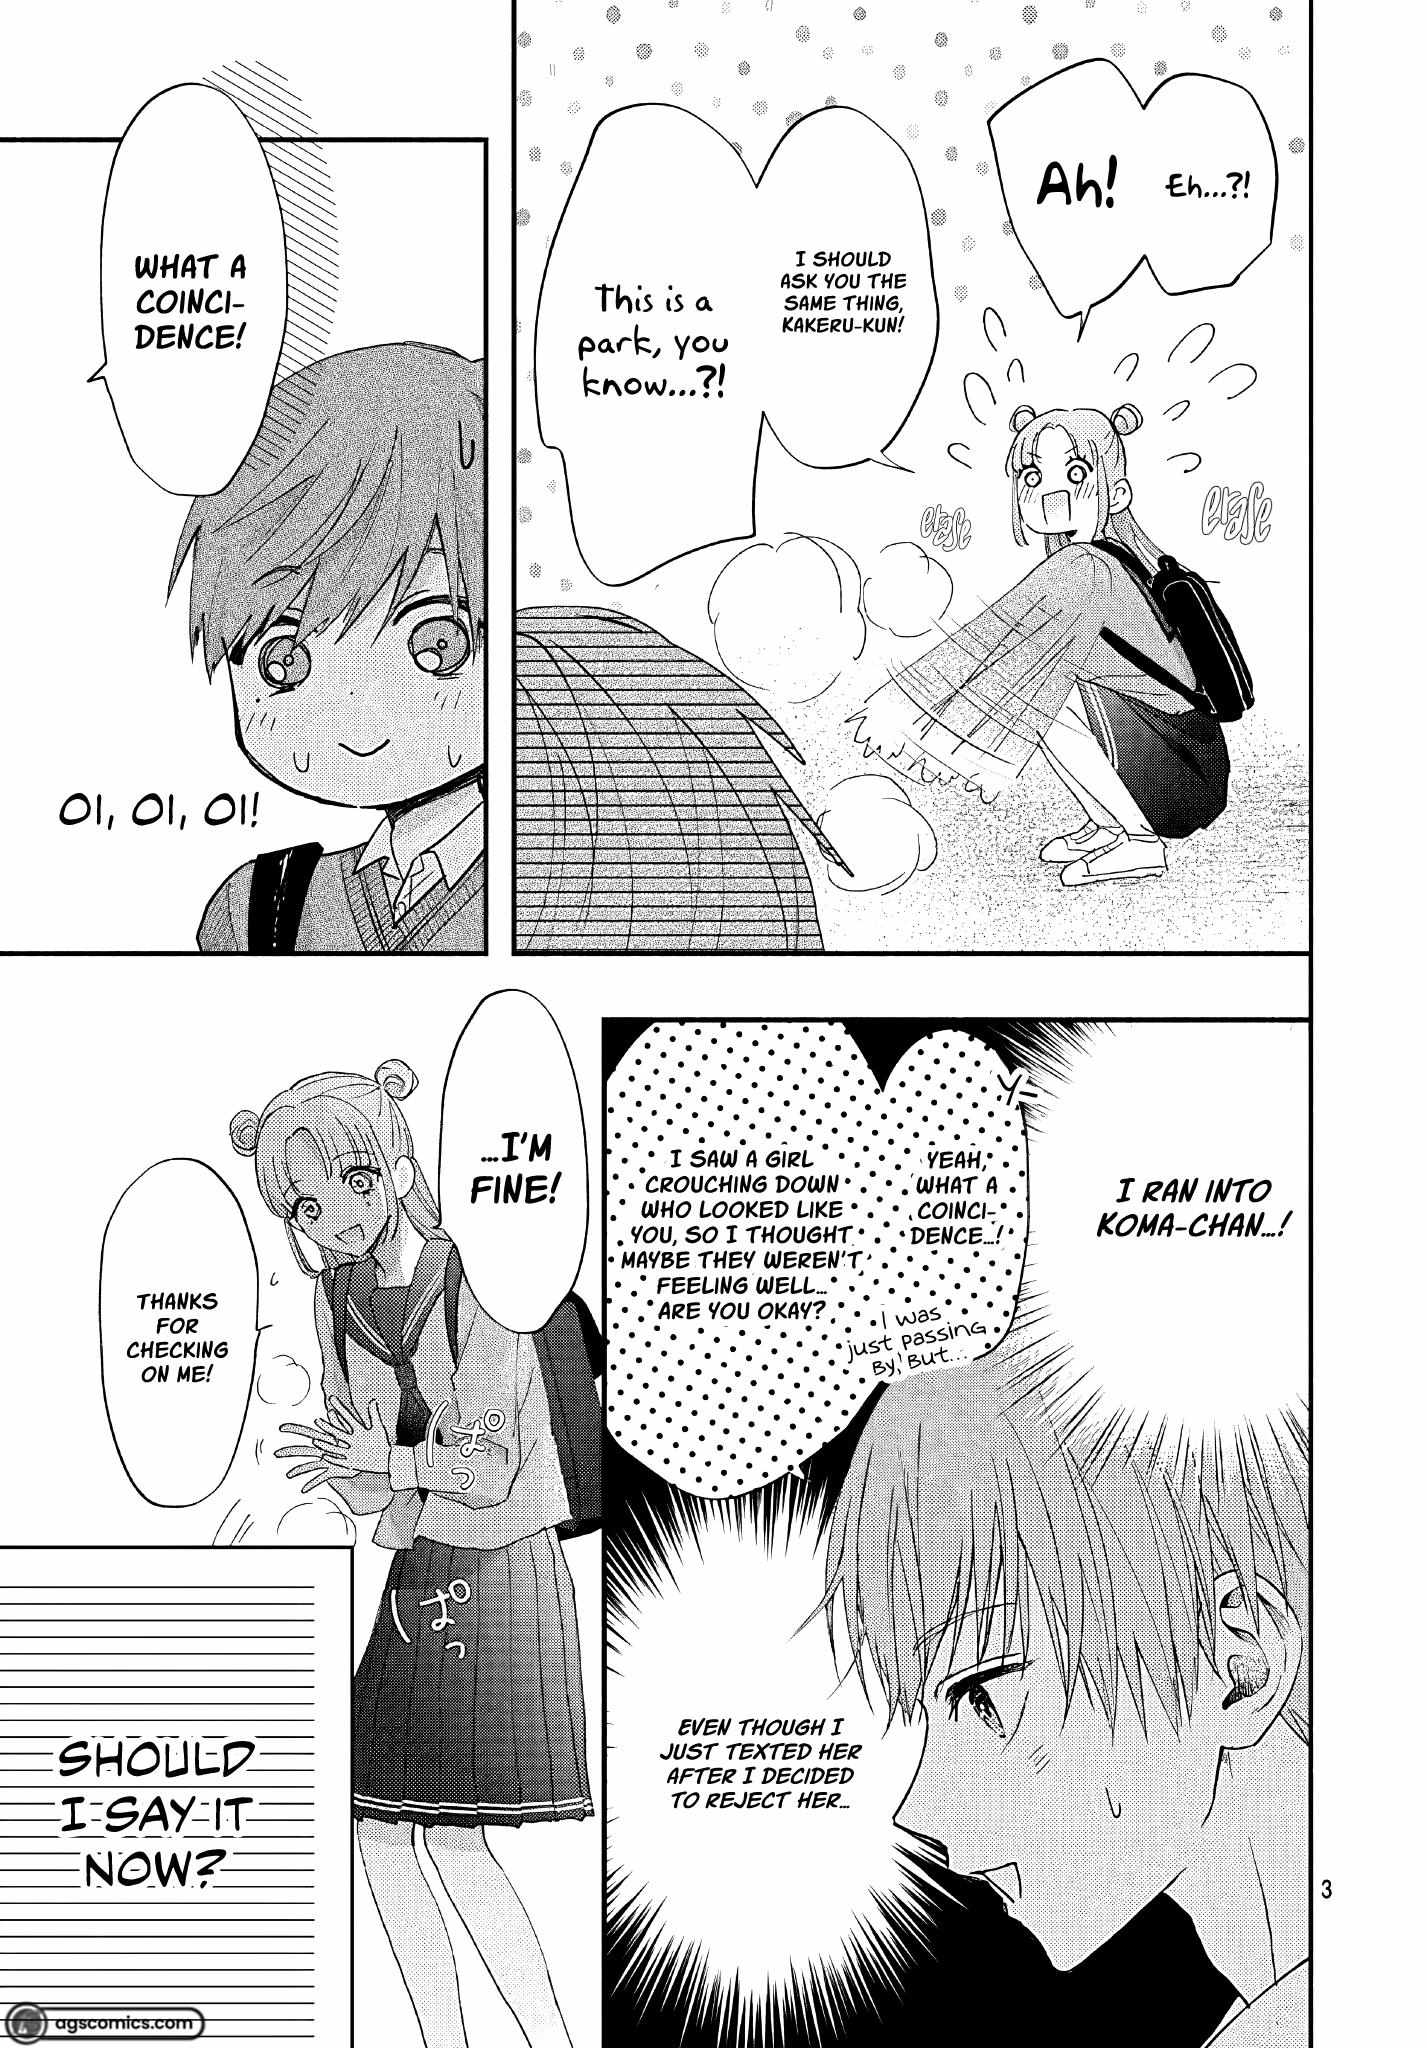 I Hate Komiyama - 11 page 4-1684d636